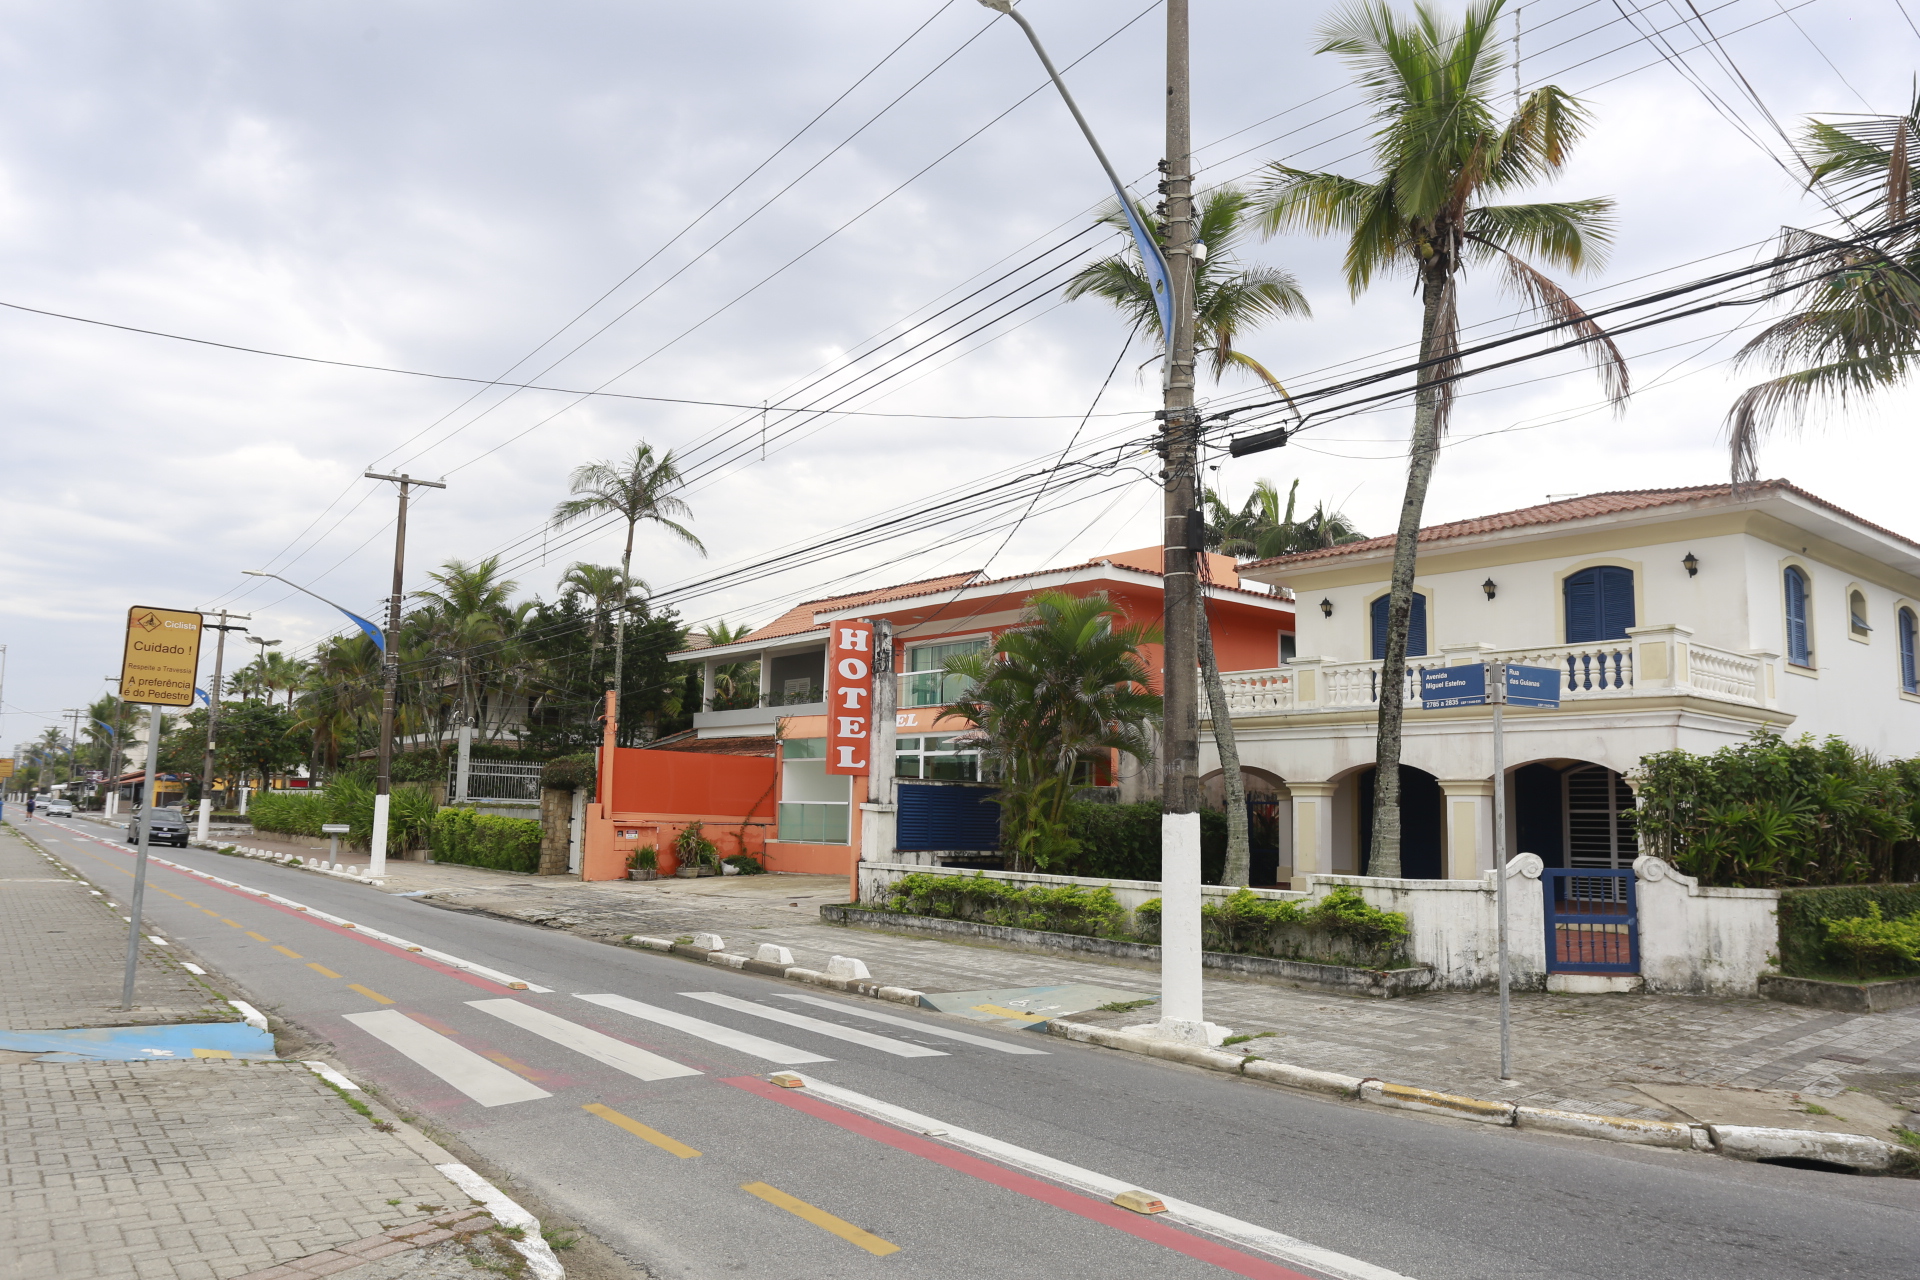 Vencimento do IPTU de hotéis, pousadas e similares é novamente prorrogado em Guarujá